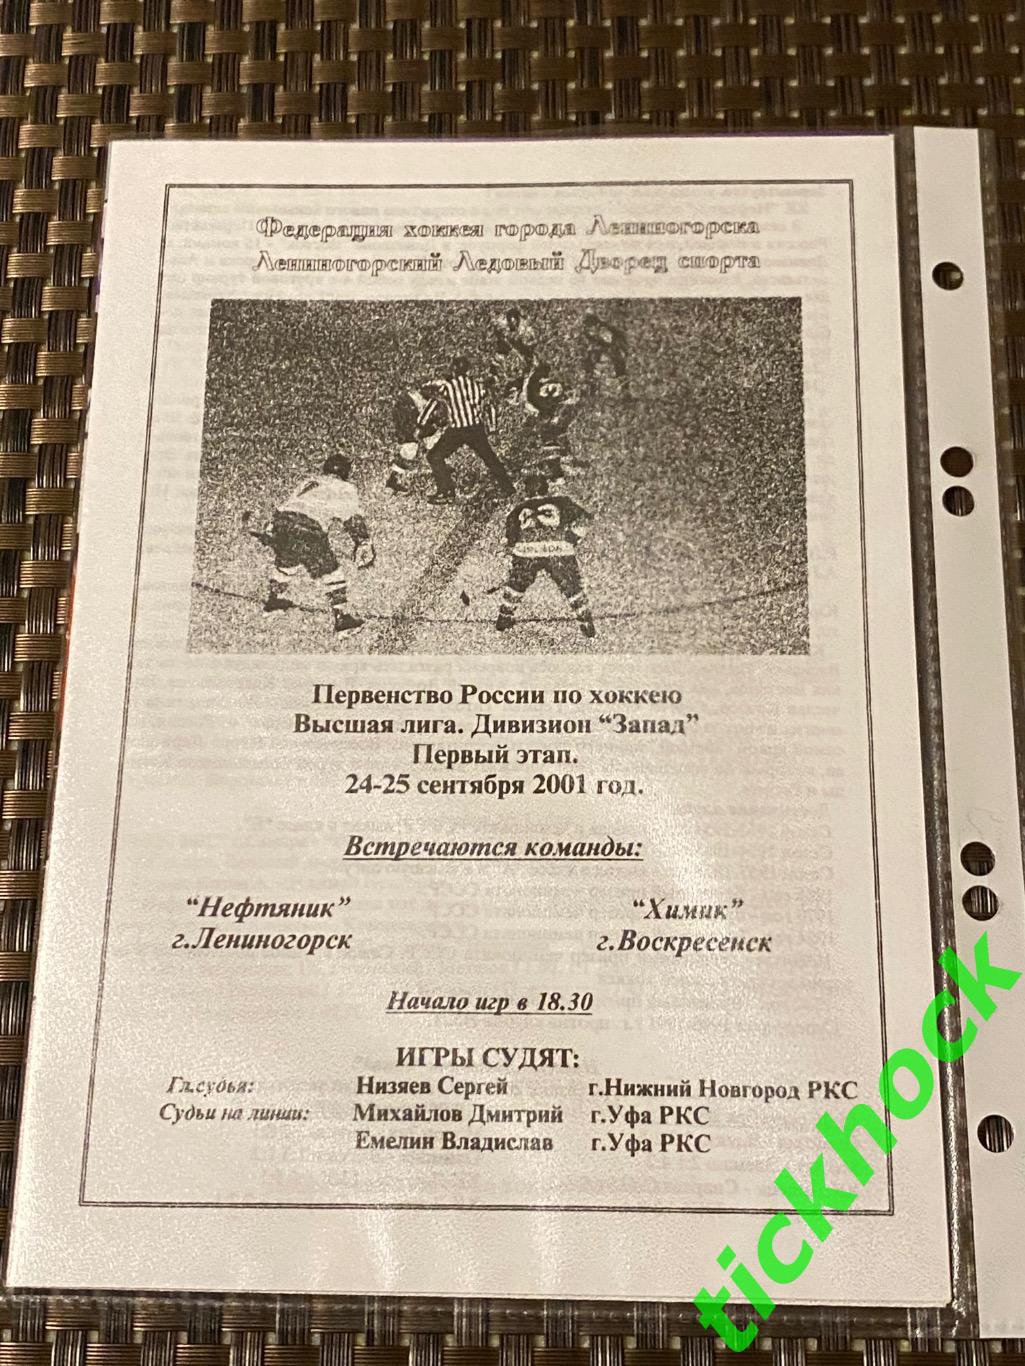 Нефтяник Лениногорск - Химик Воскресенск 24-25.09.2001 Запад высшая лига - SY